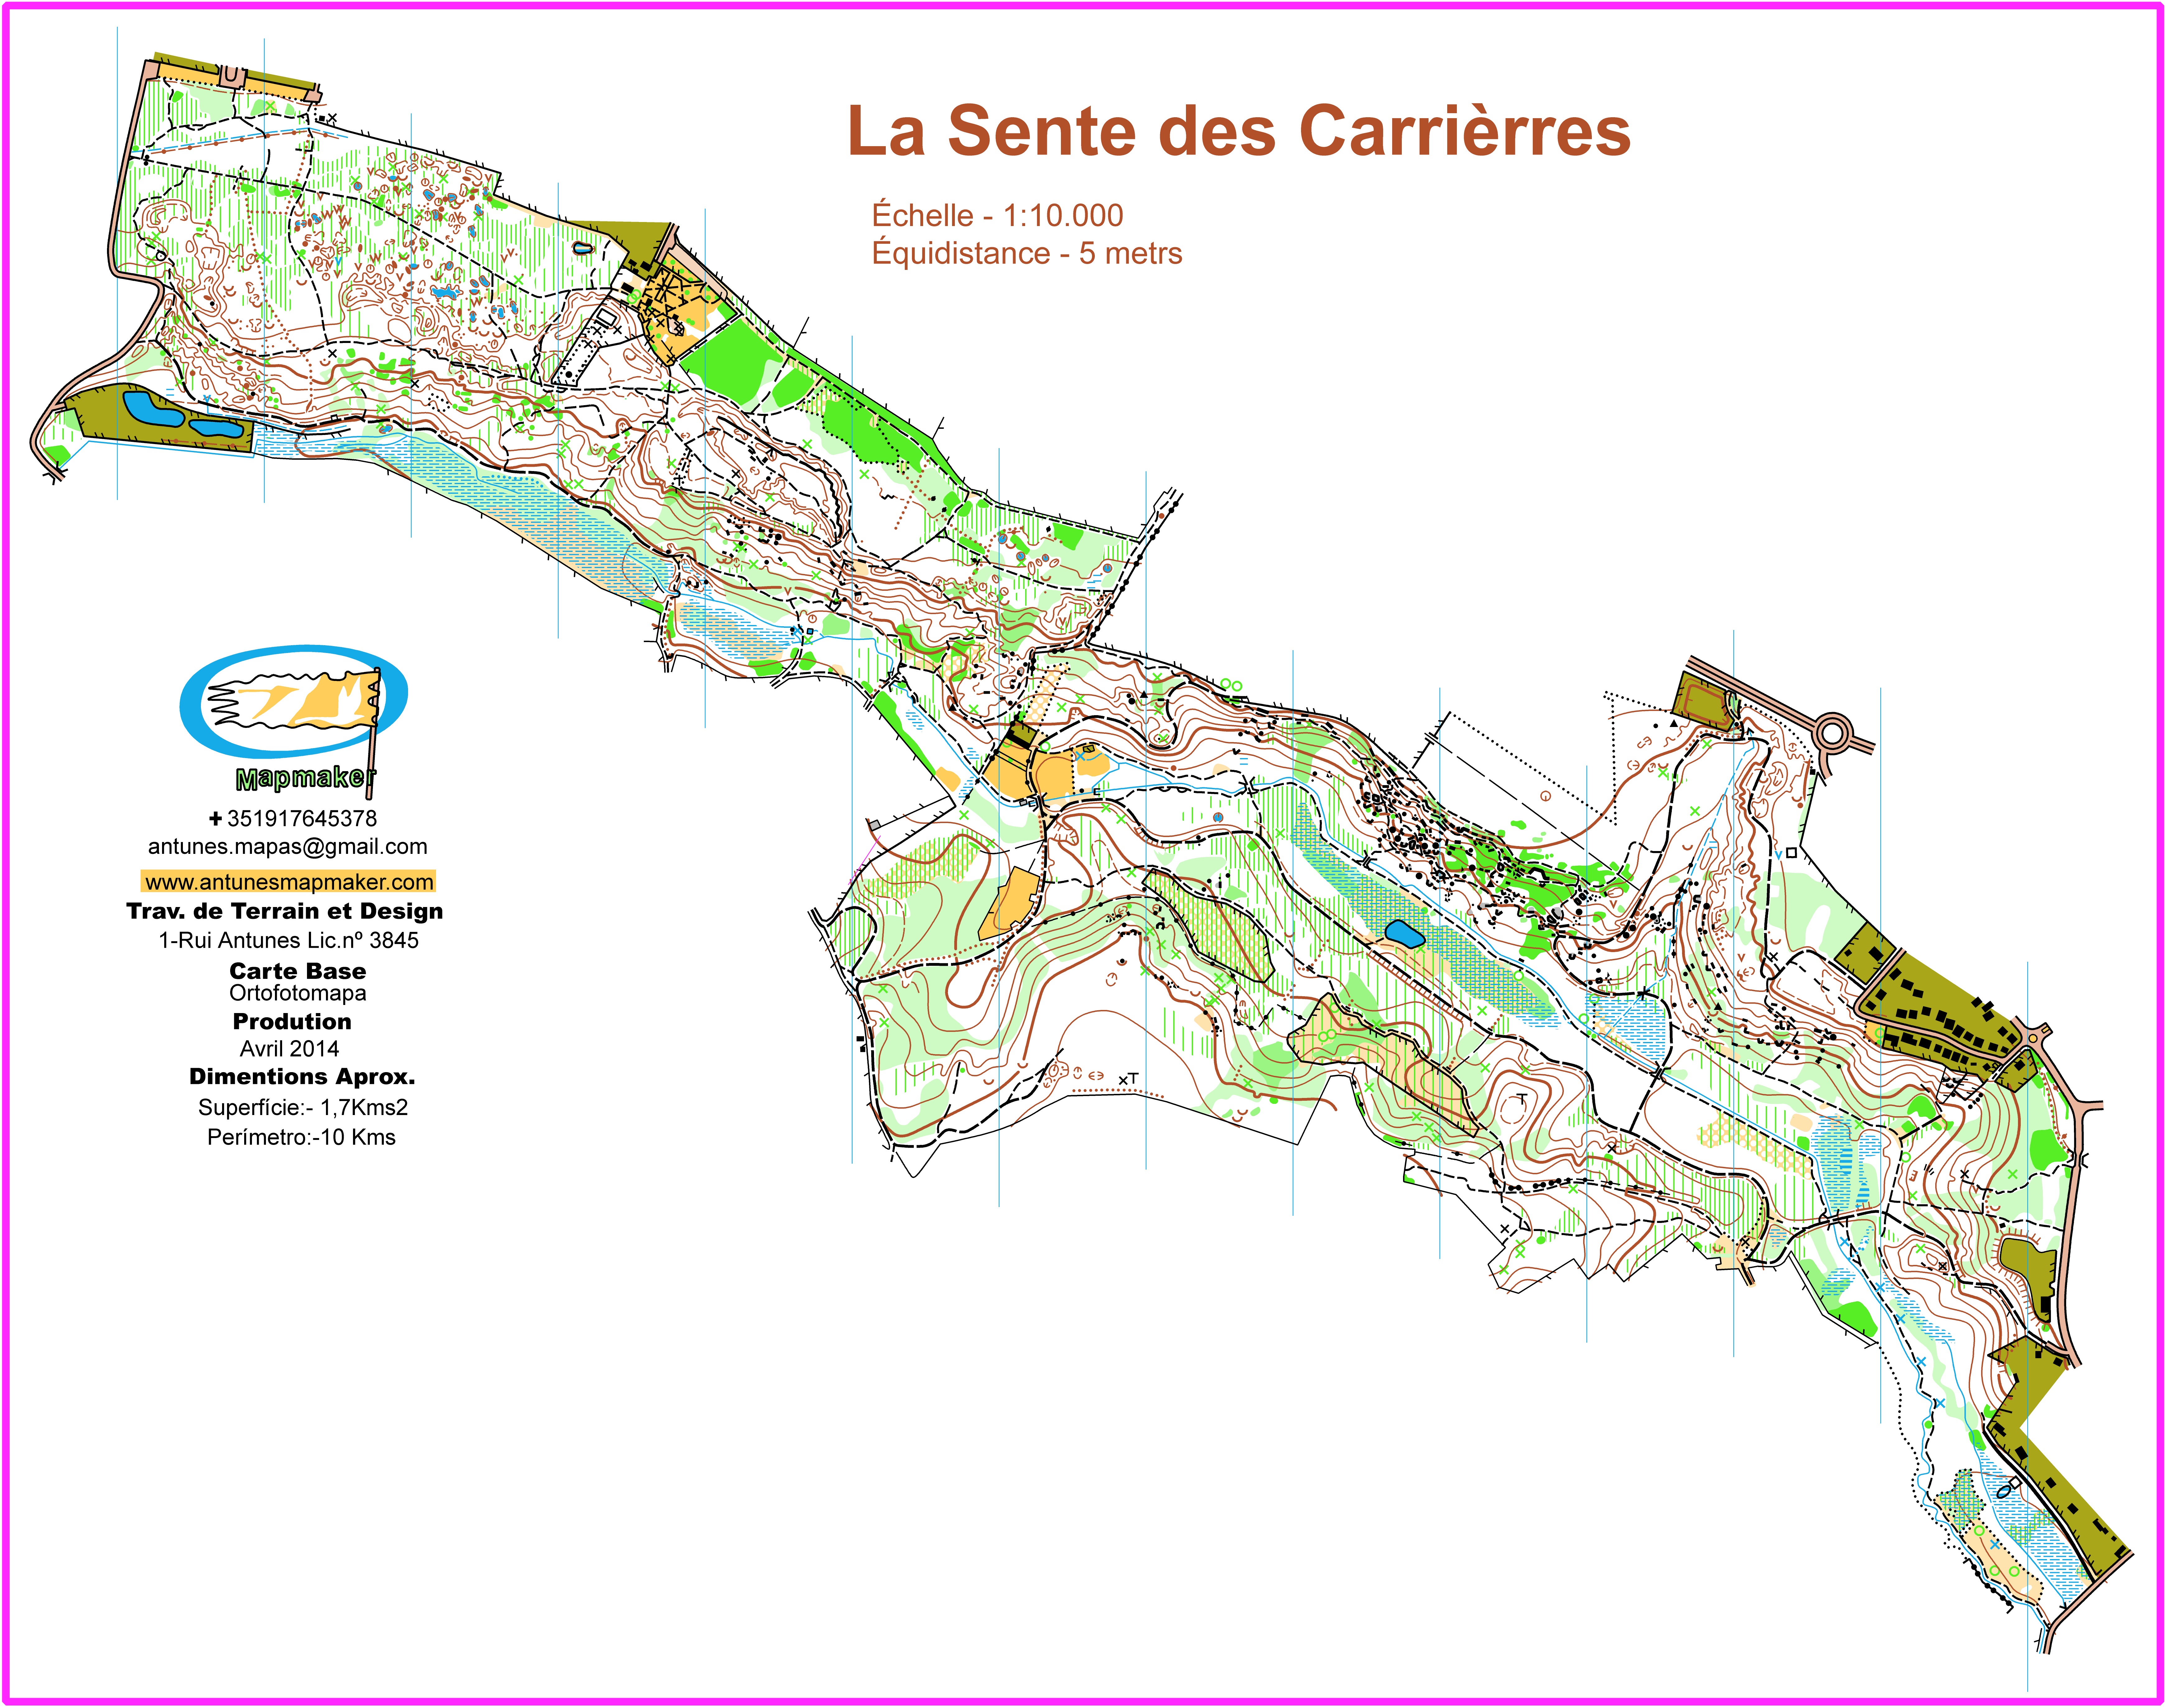 (164) - La Sente des Carrières Map - France April2014